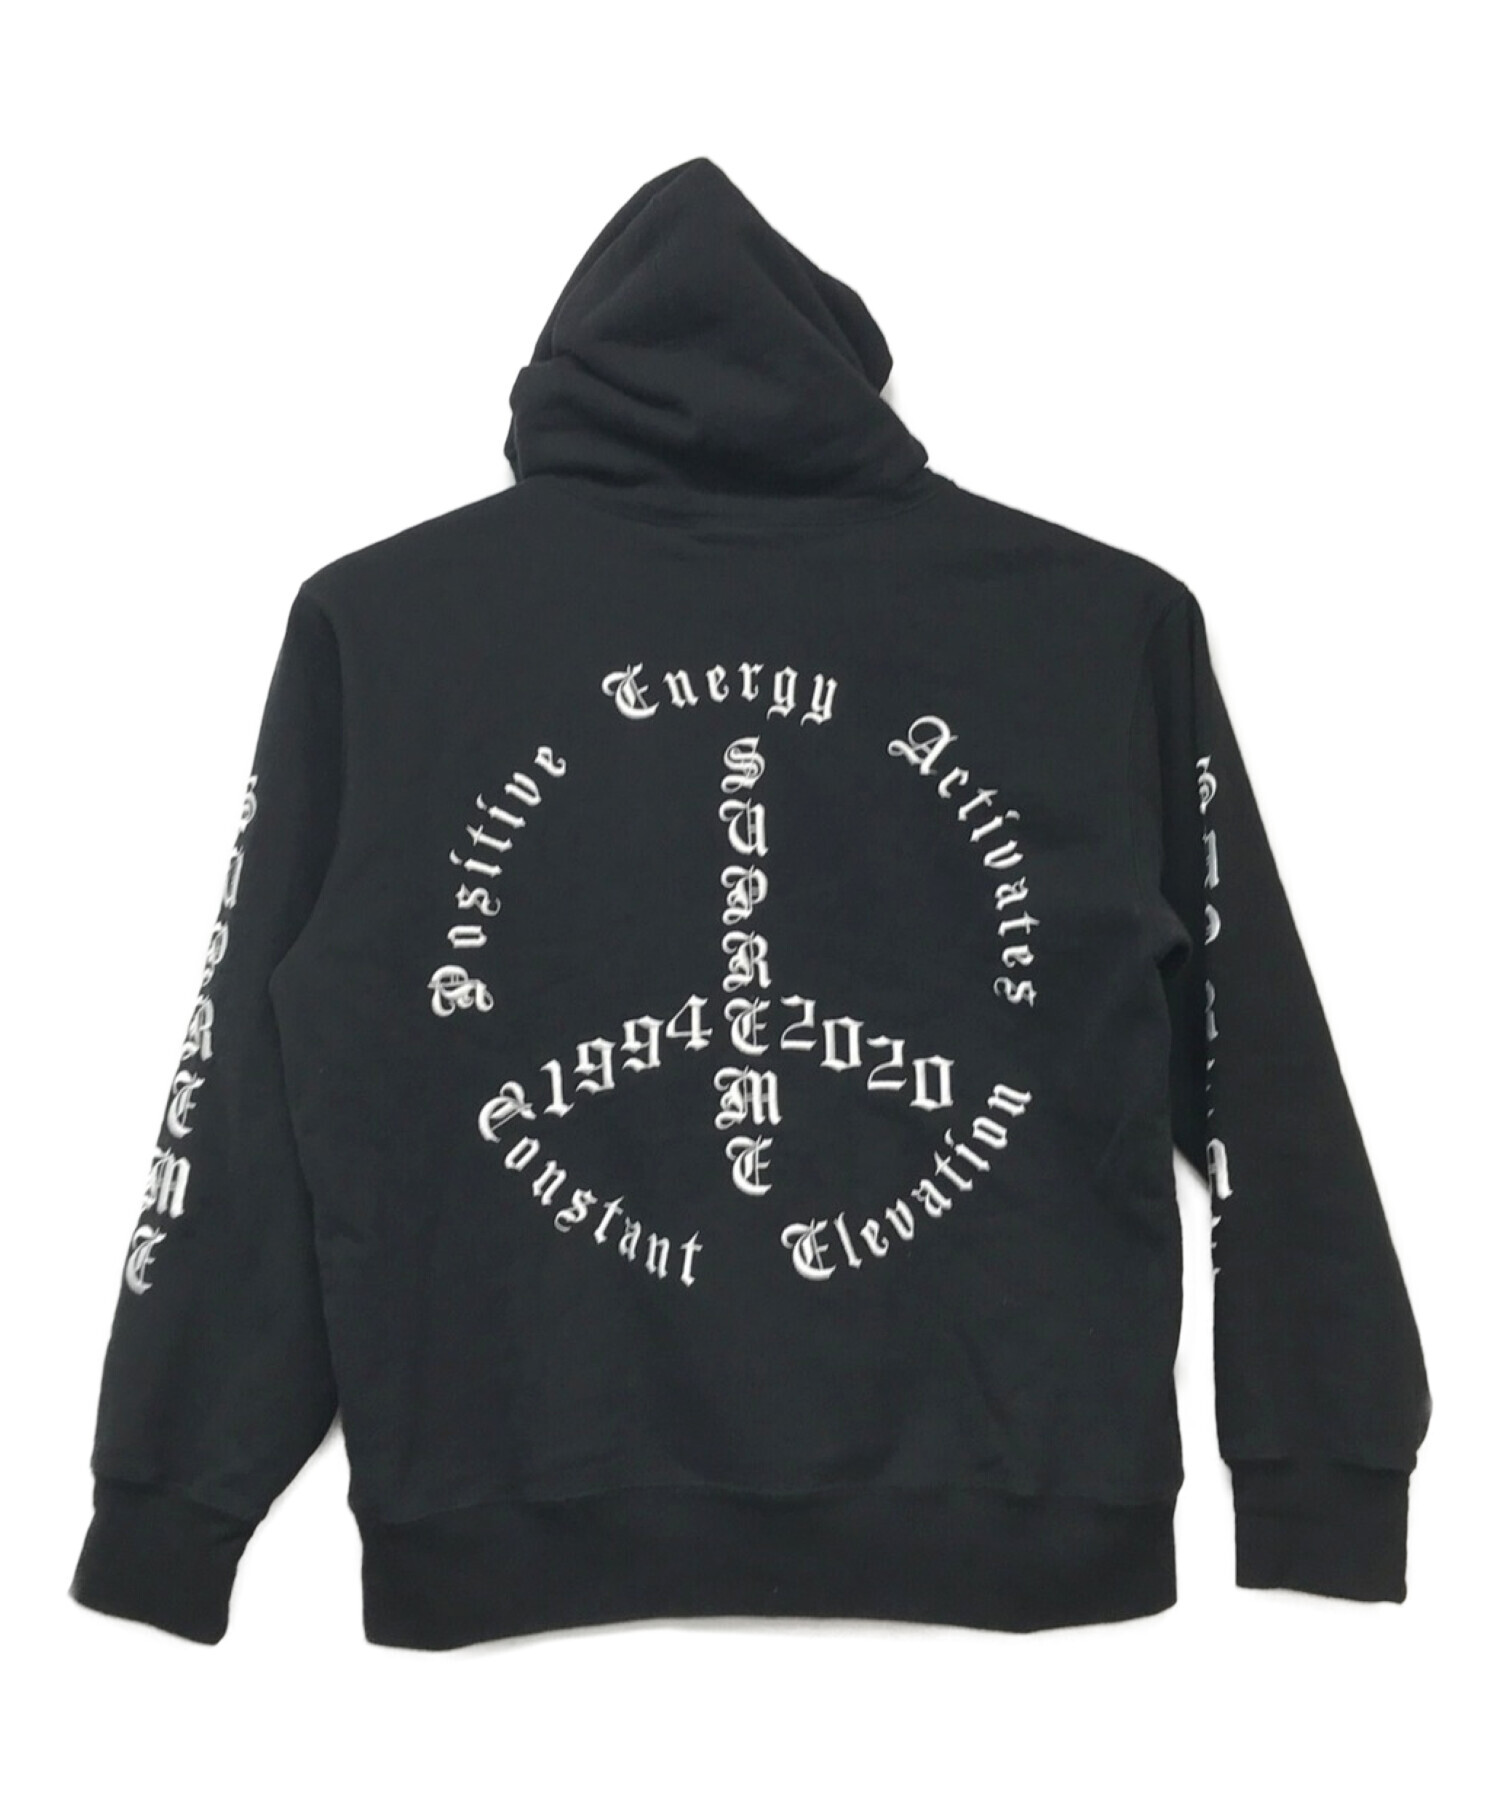 SUPREME (シュプリーム) peace hooded sweatshirt/ピースフーデッドスウェットシャツ ブラック サイズ:M